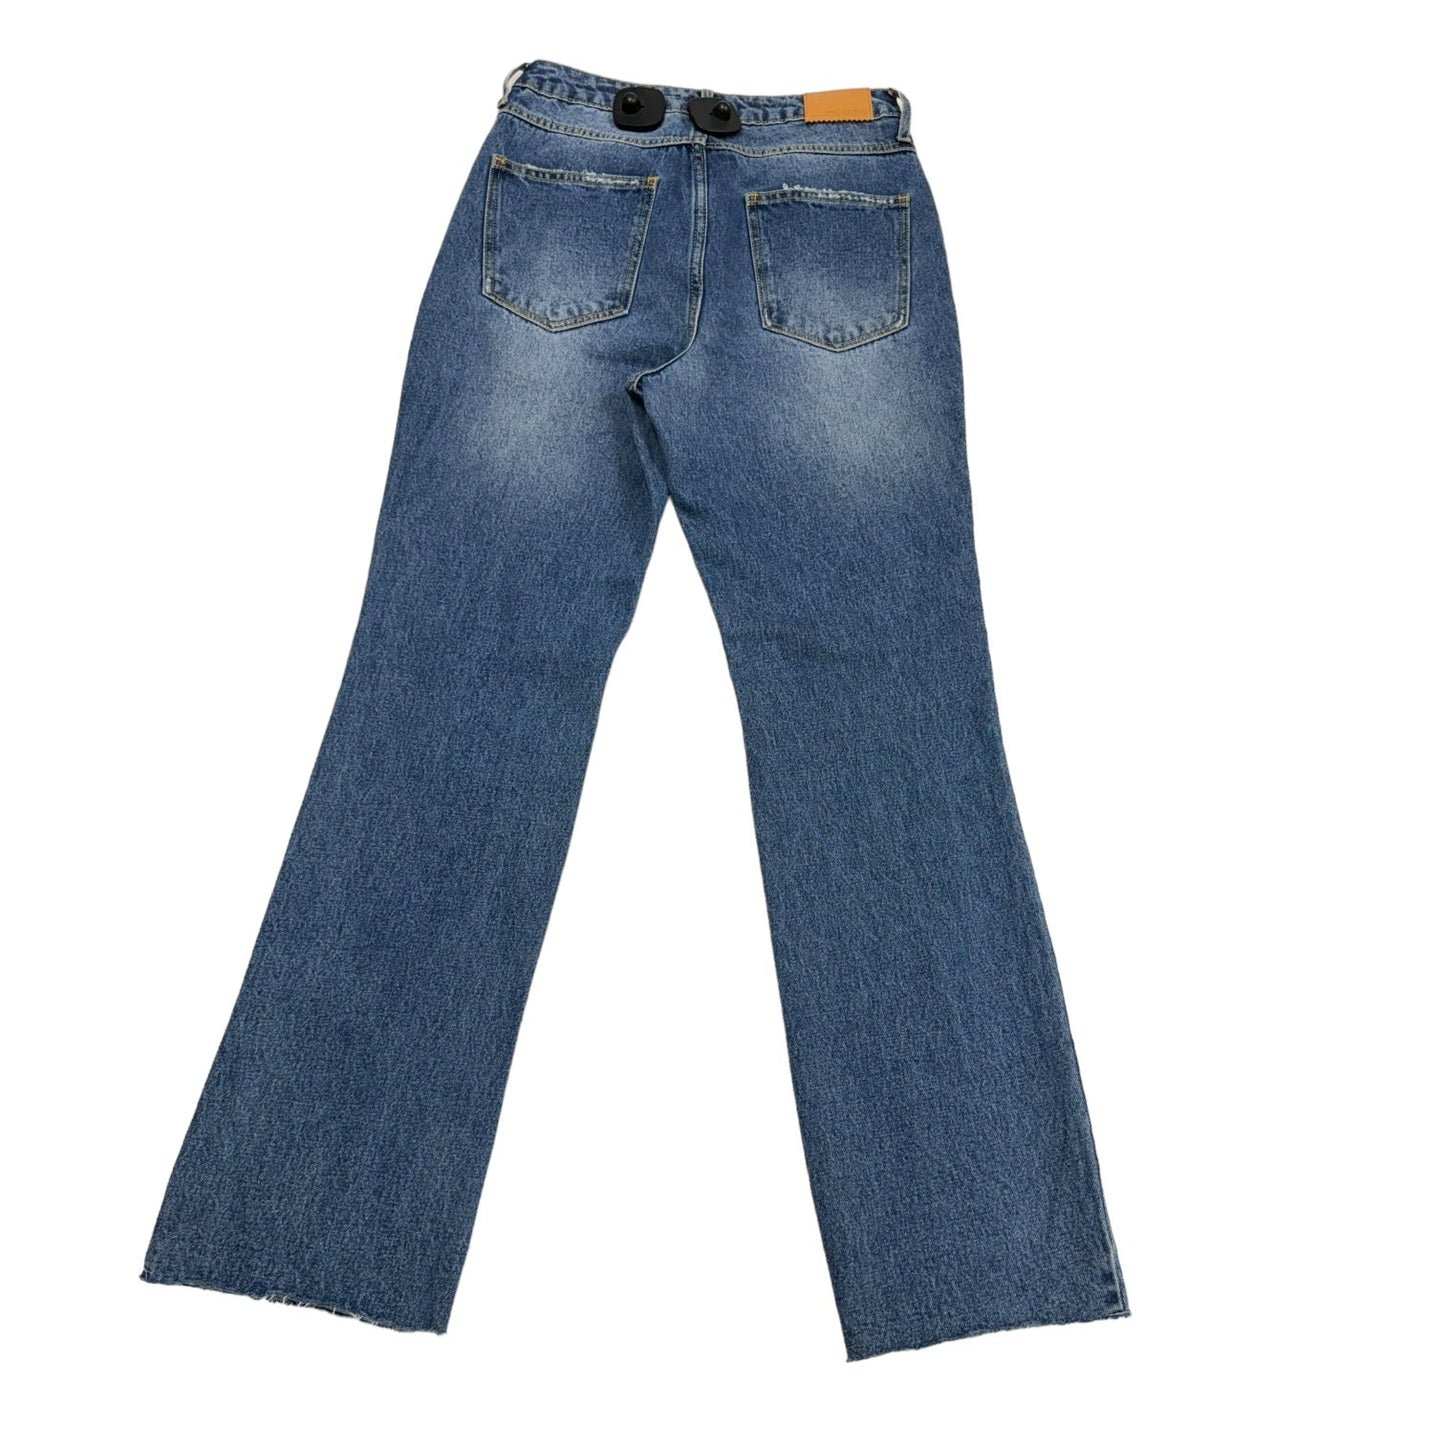 Jeans Straight By Avec Les Filles  Size: 6